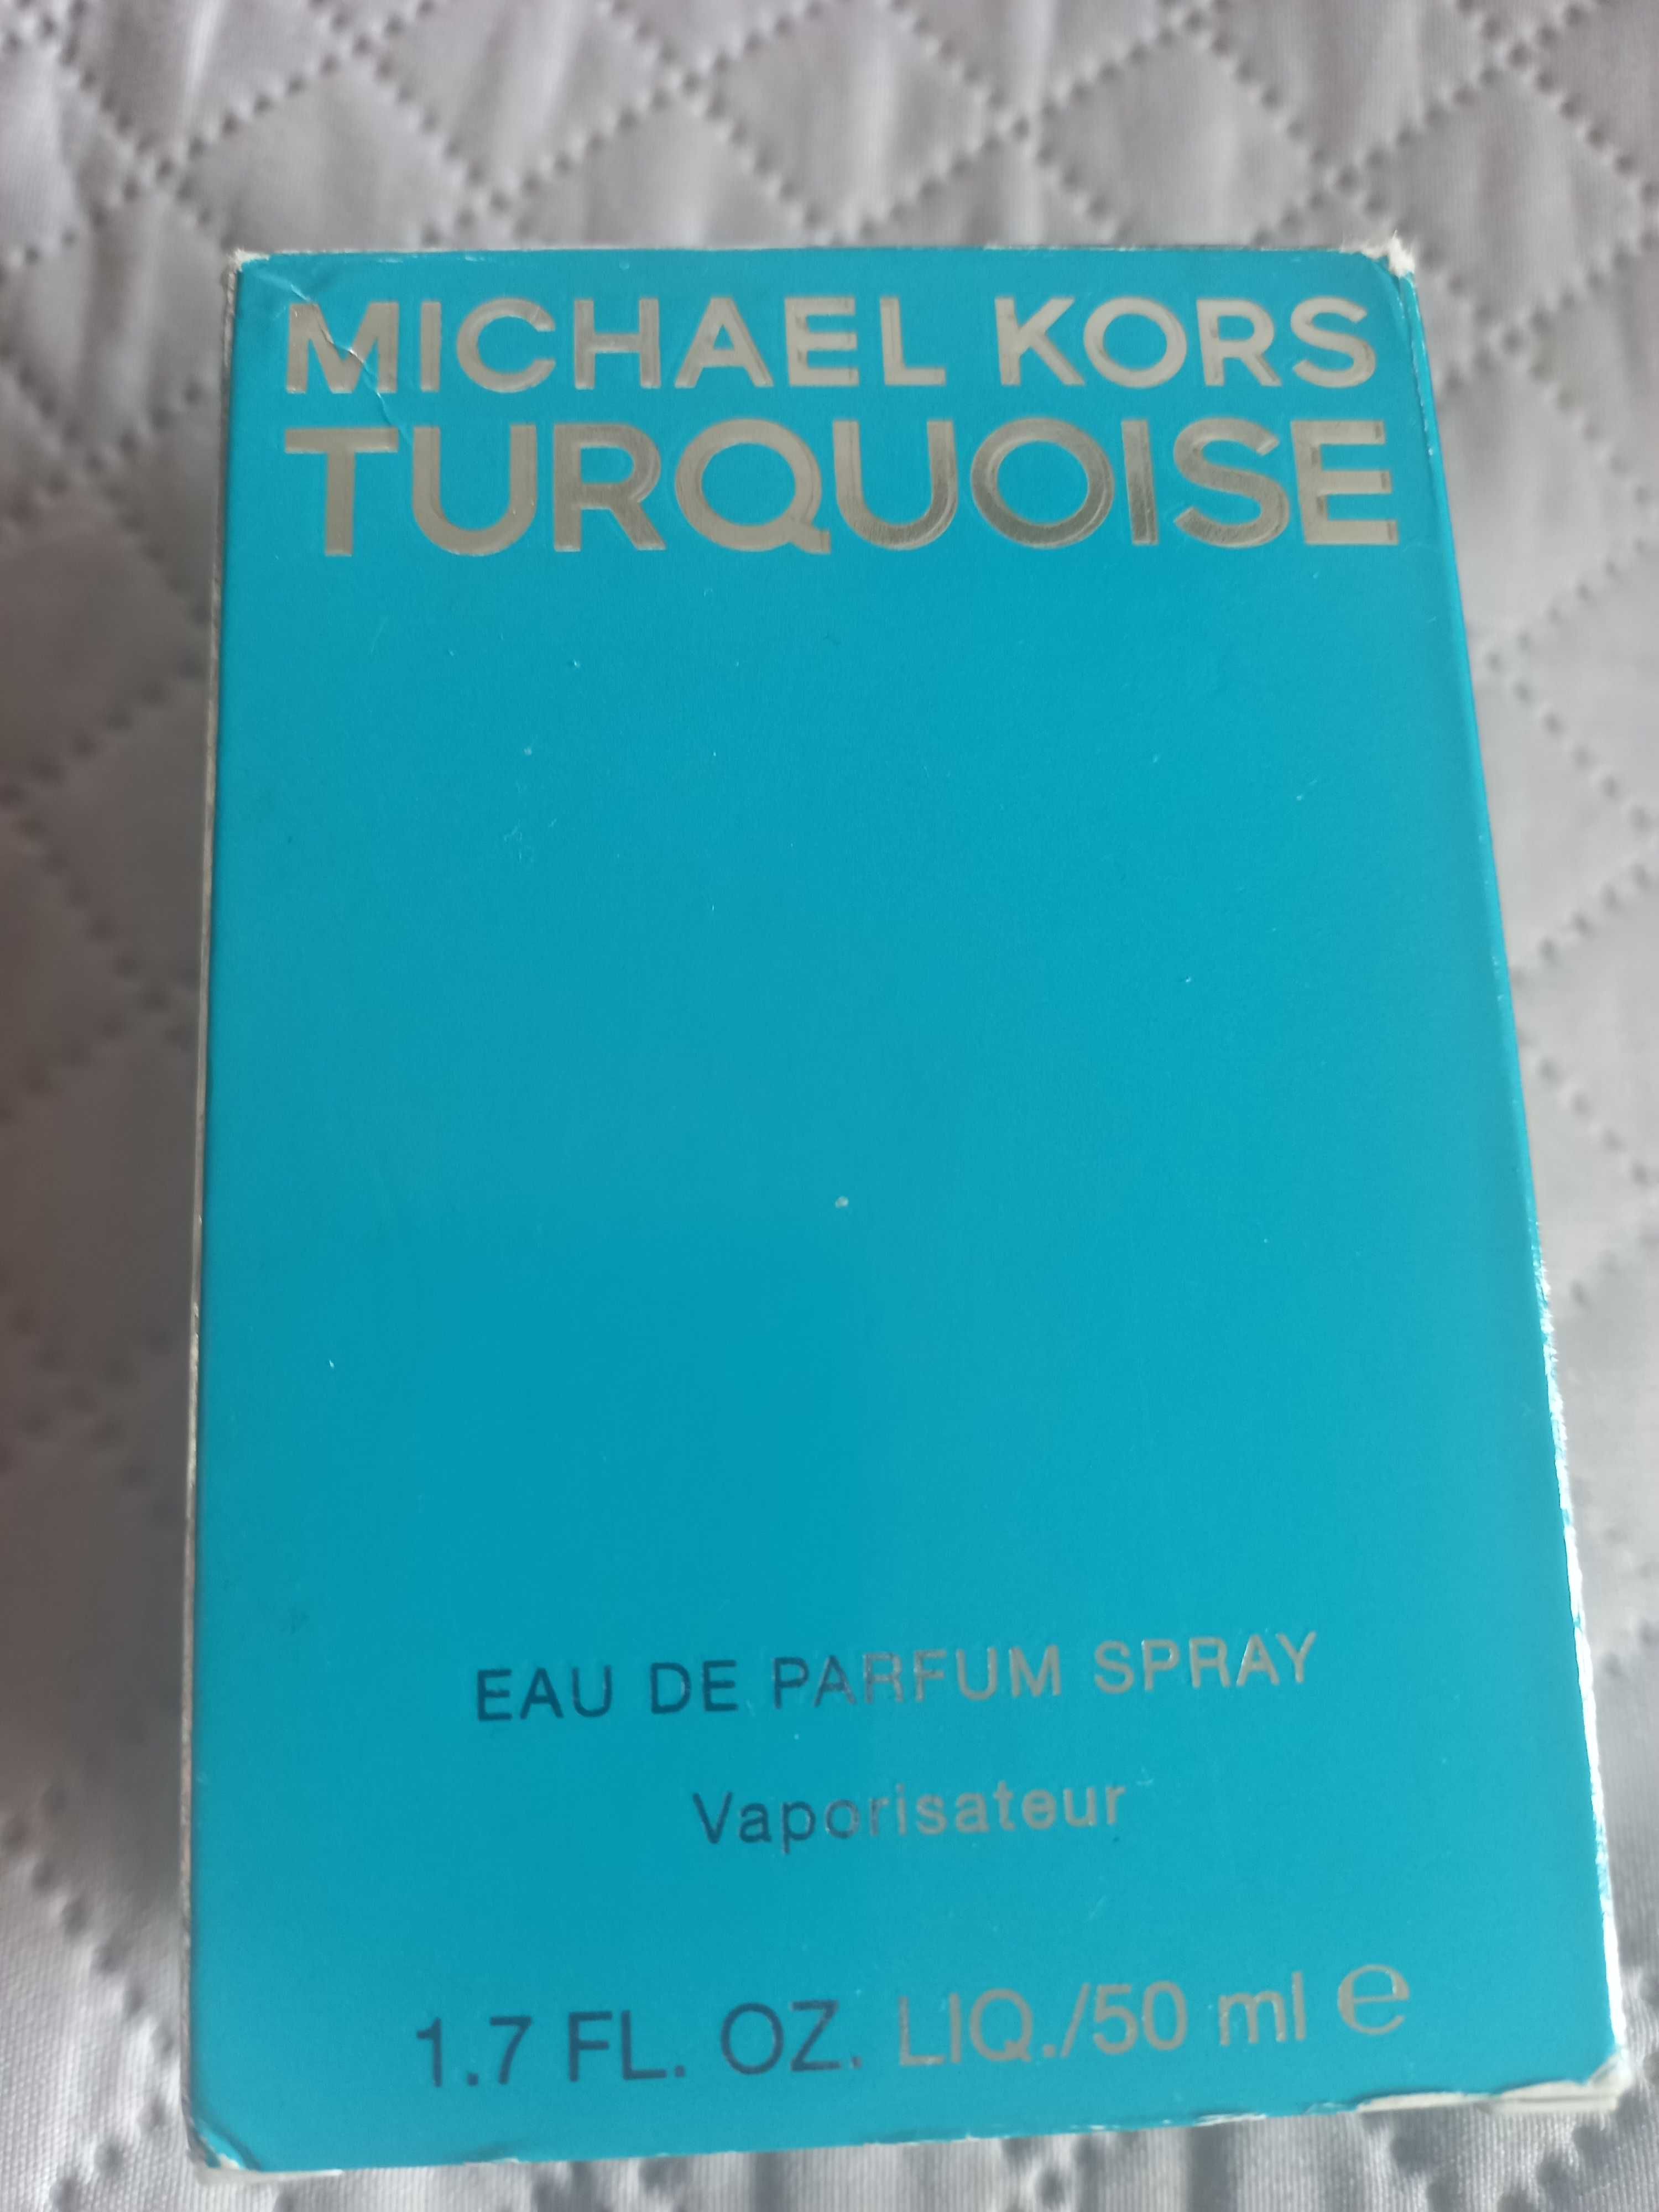 Michael Kors Turquoise 50ml. EDP UNIKAT